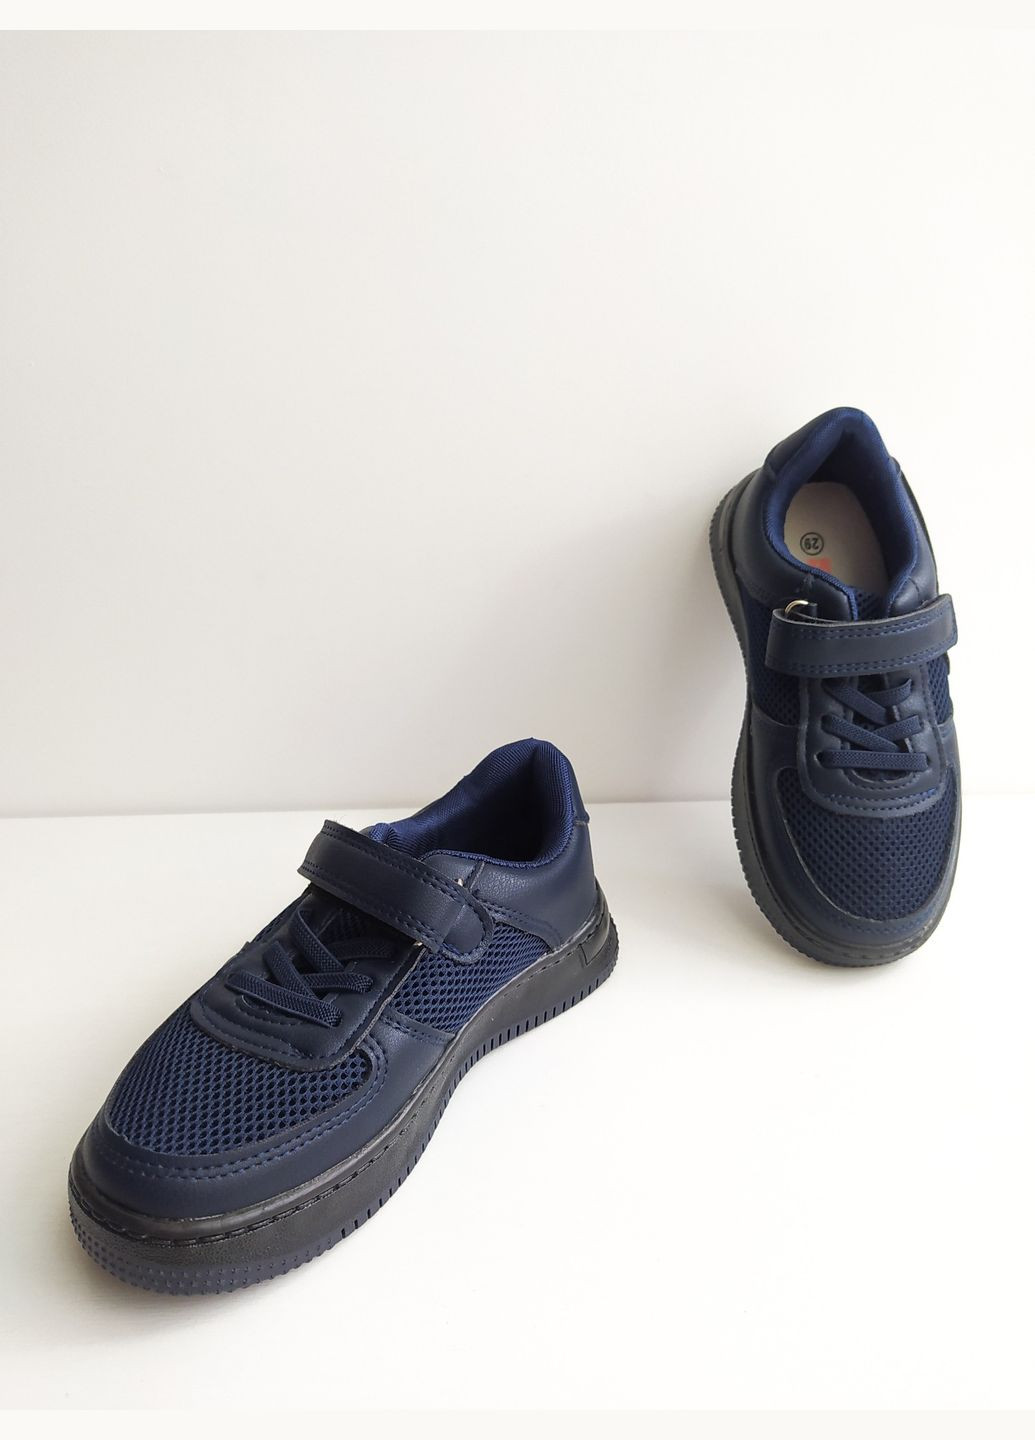 Синие детские кроссовки с подсветкой 28 г 17 см синий артикул к159 Jong Golf